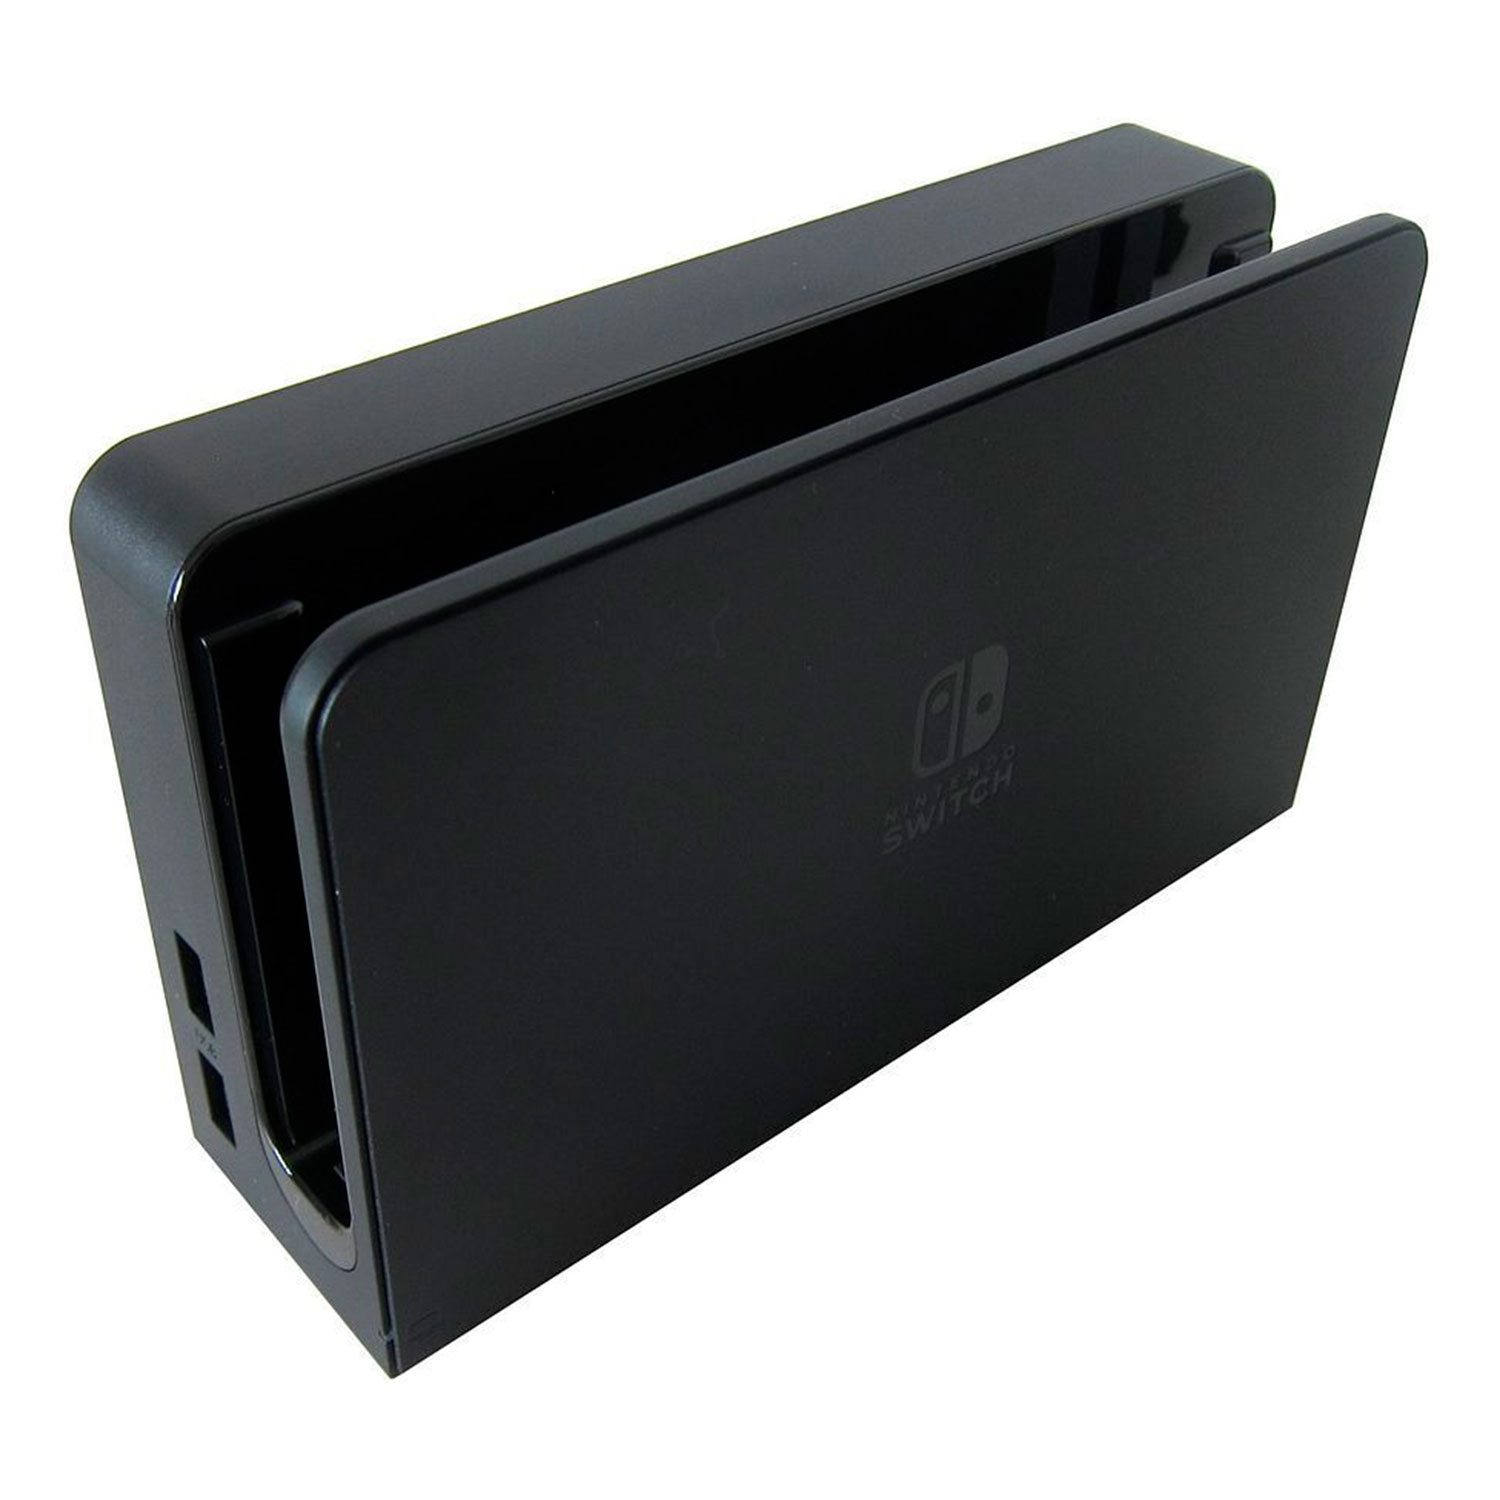 Dock de Carregamento para Nintendo Switch OLED - Preto (Sem Caixa)